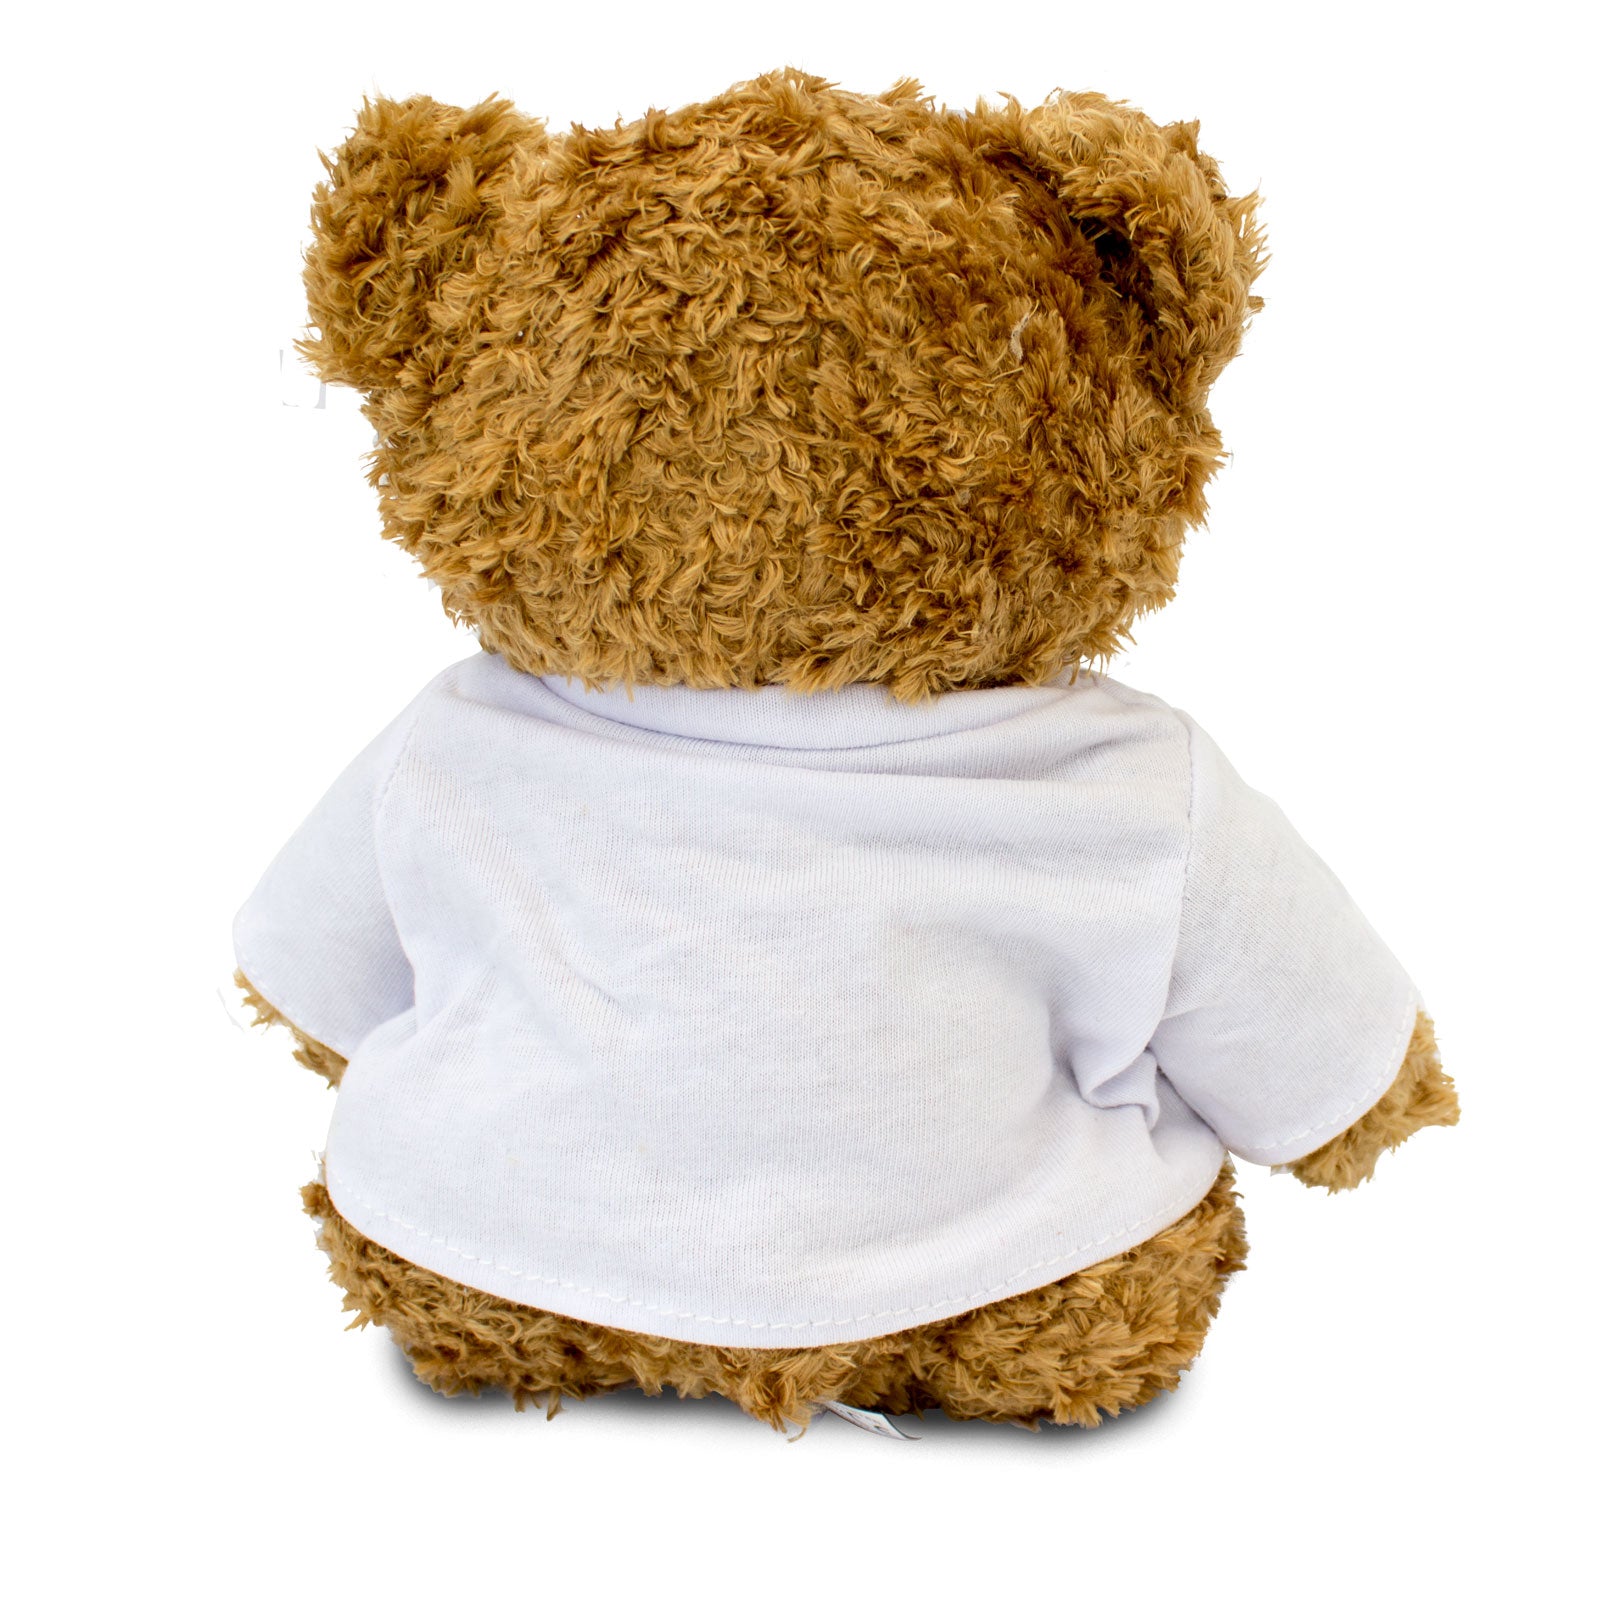 Get Well Soon Flavio - Teddy Bear